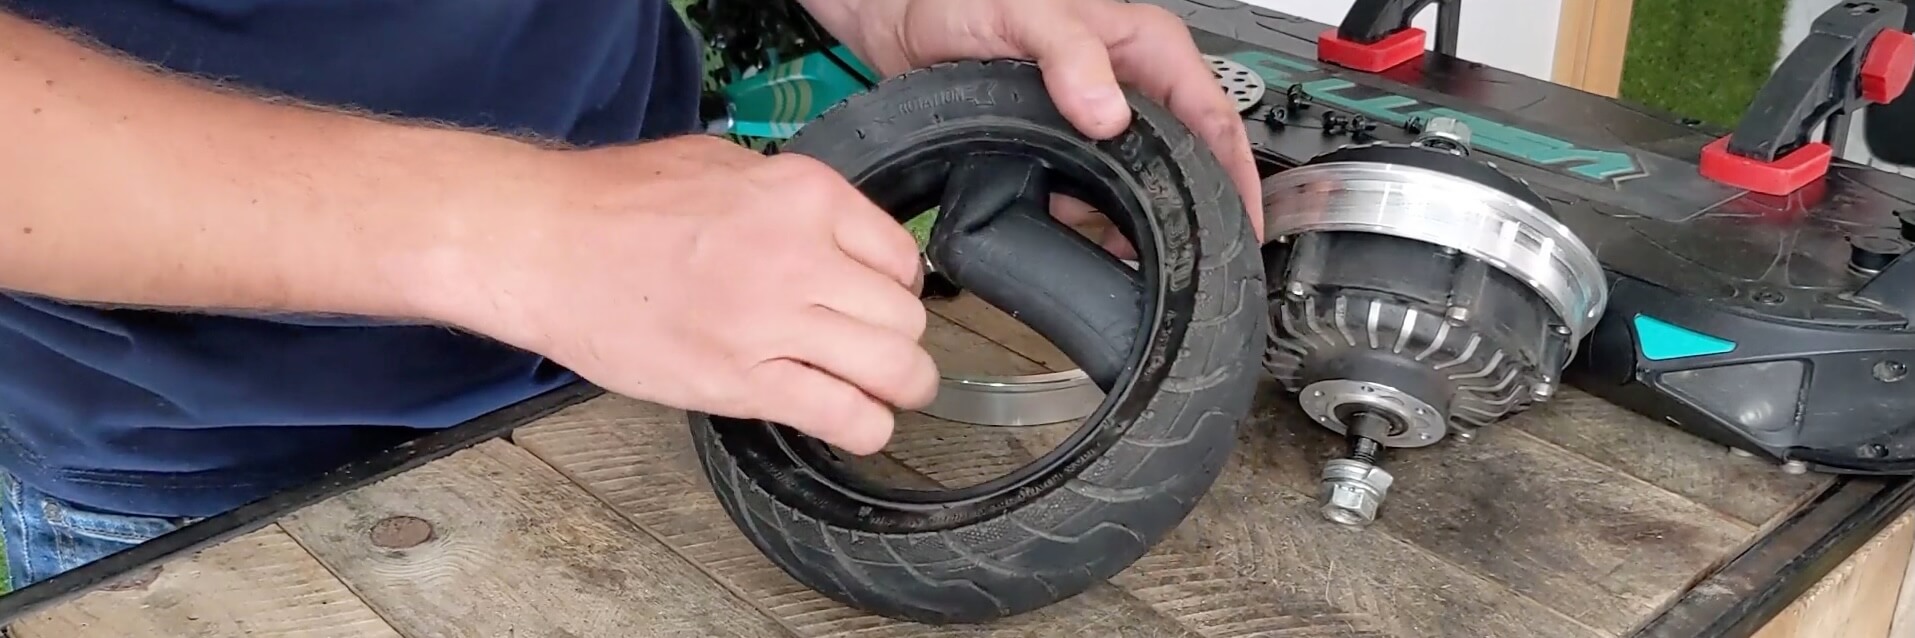 VSETT 9 - Roue Avant - Retirer l’ancien pneu